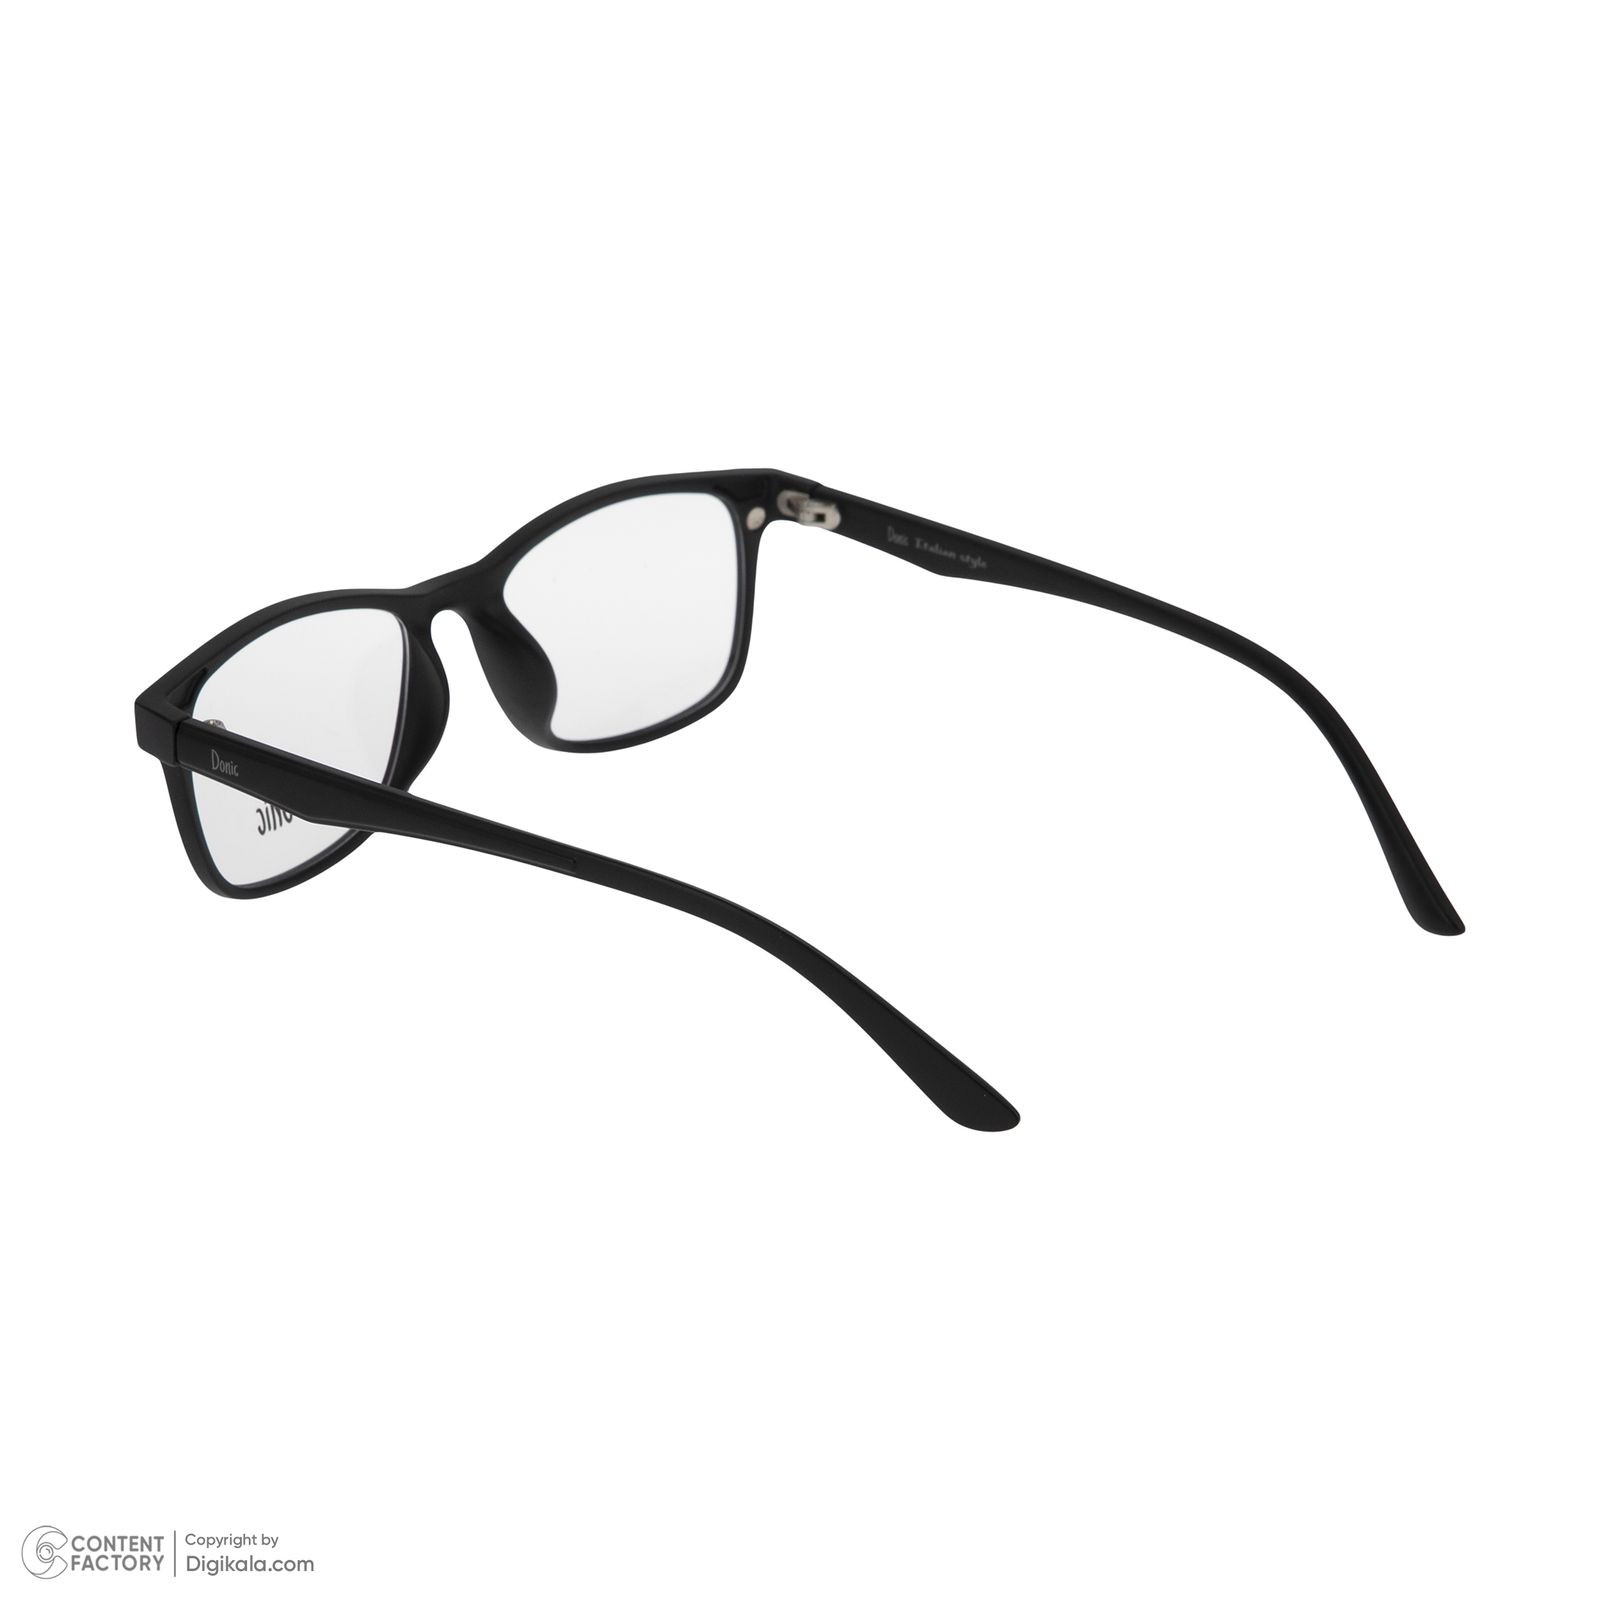 فریم عینک طبی دونیک مدل tr2291-c2 به همراه کاور آفتابی مجموعه 6 عددی -  - 5